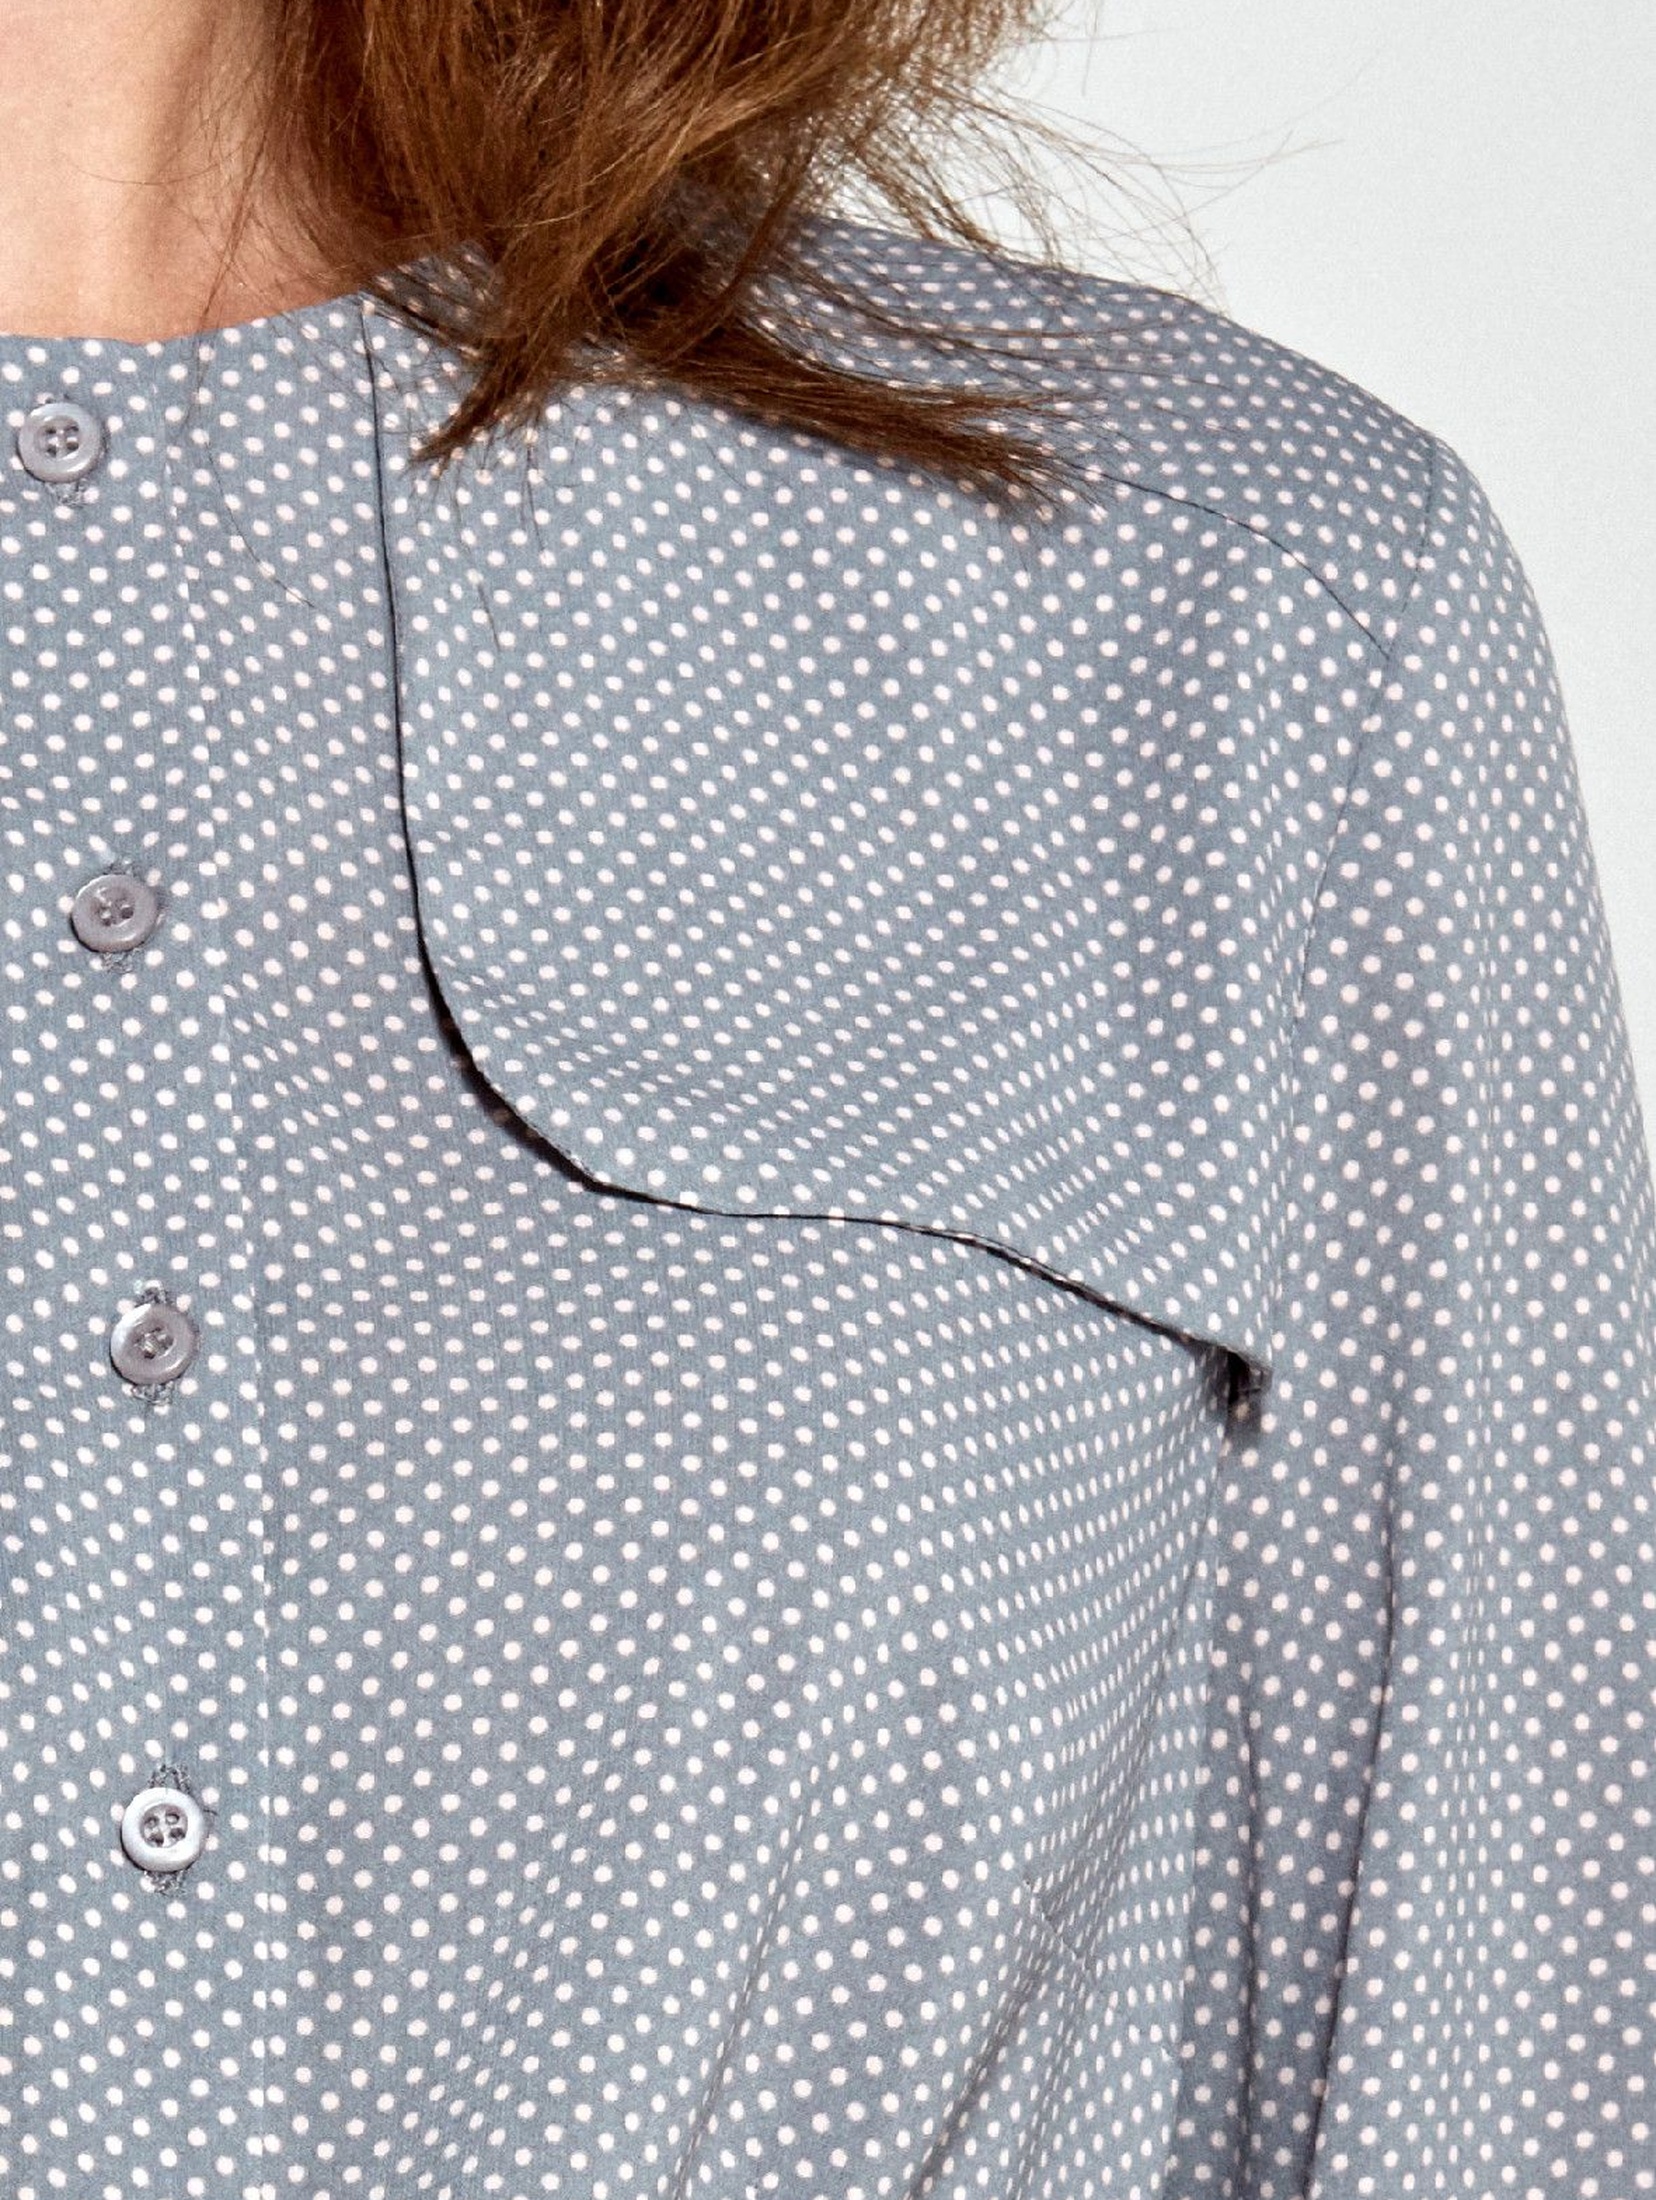 Szara bluzka damska z ozdobną klapą po lewej stronie- szara w kropki